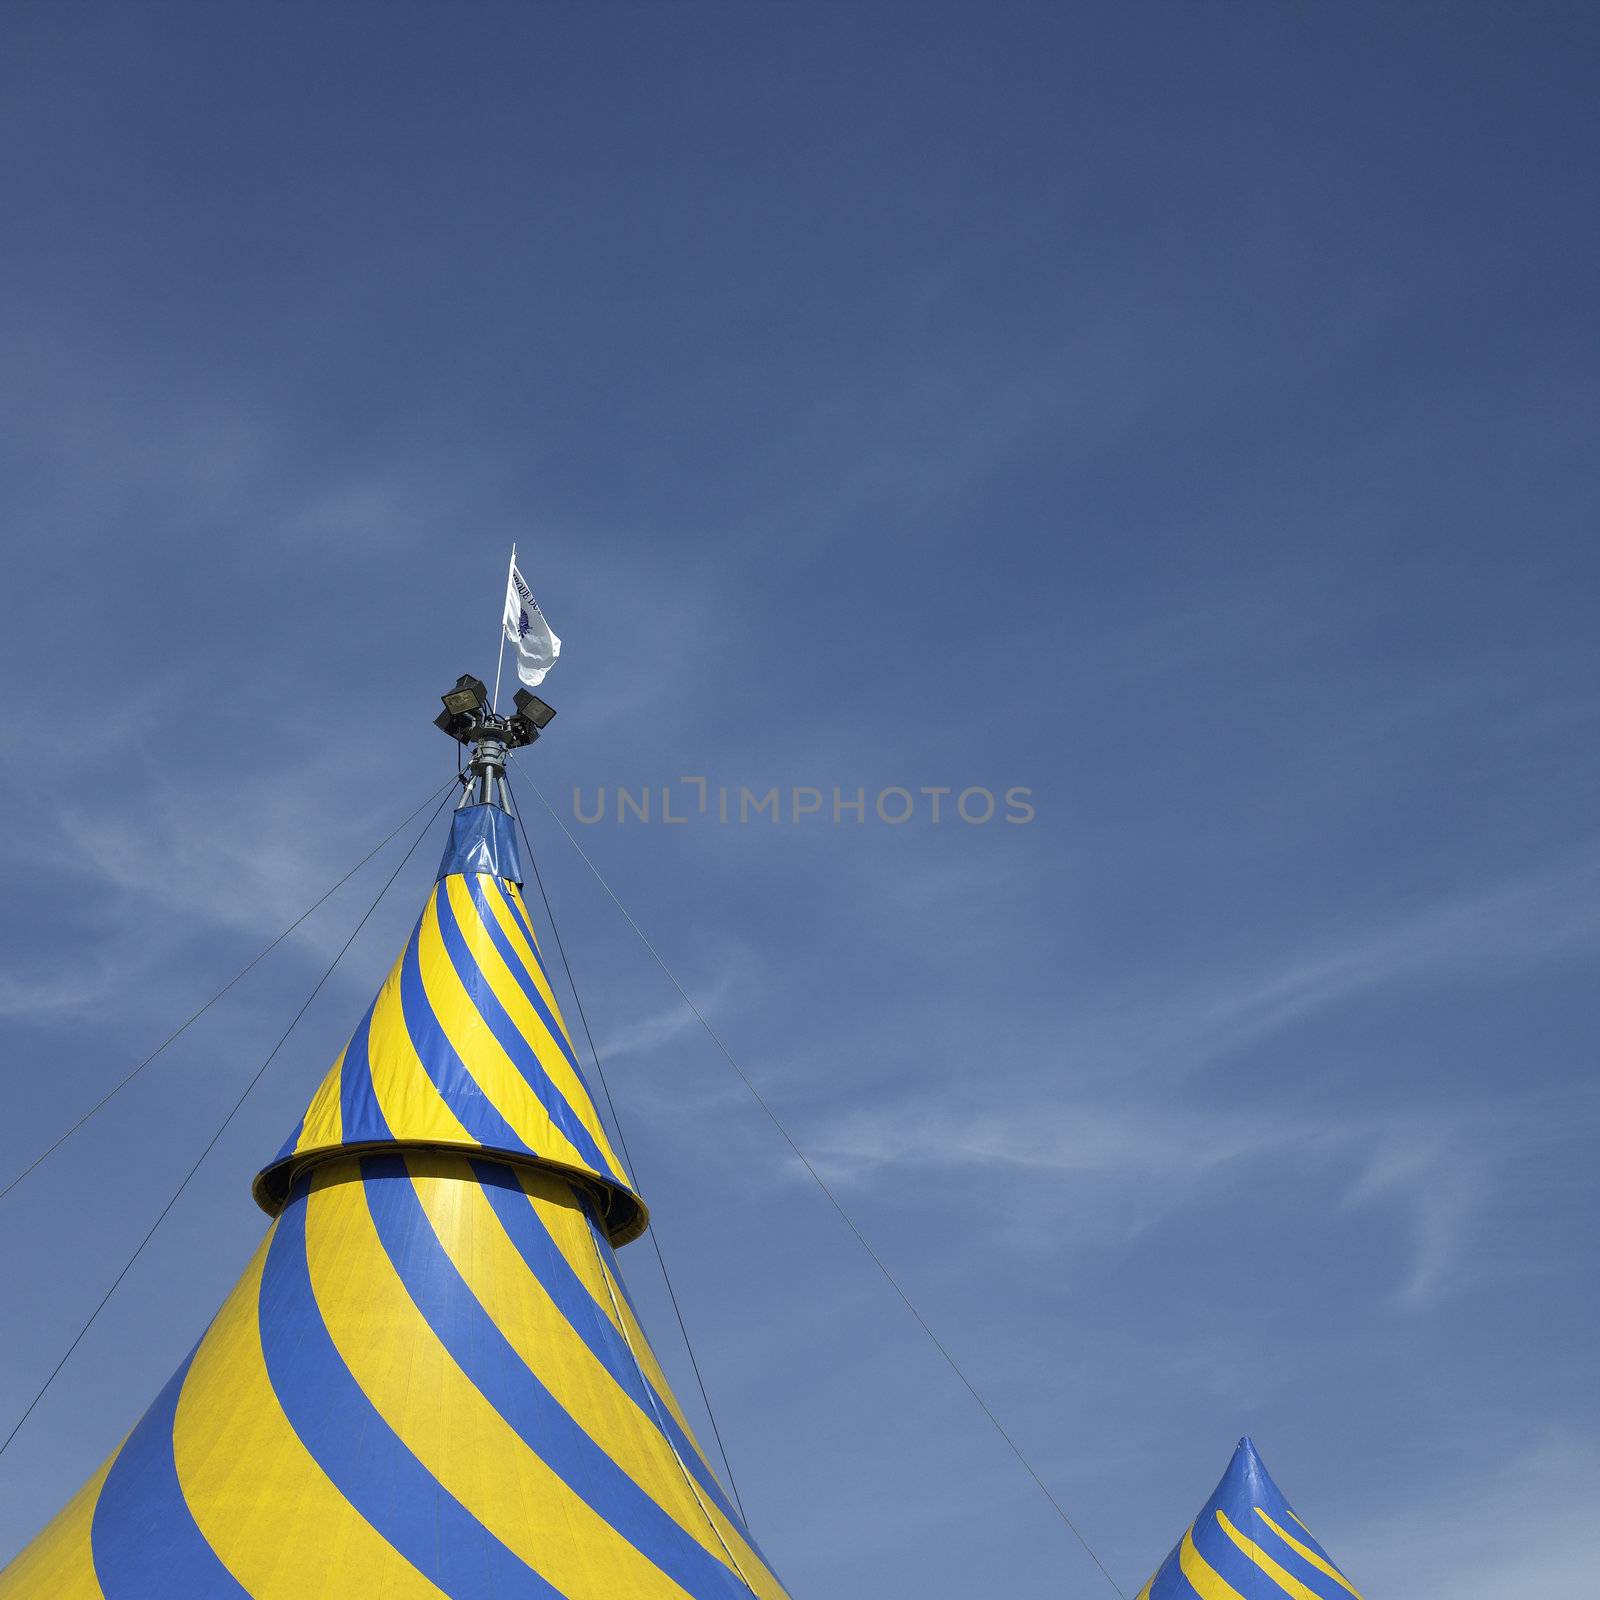 Cirque du Soleil Tent by mmm